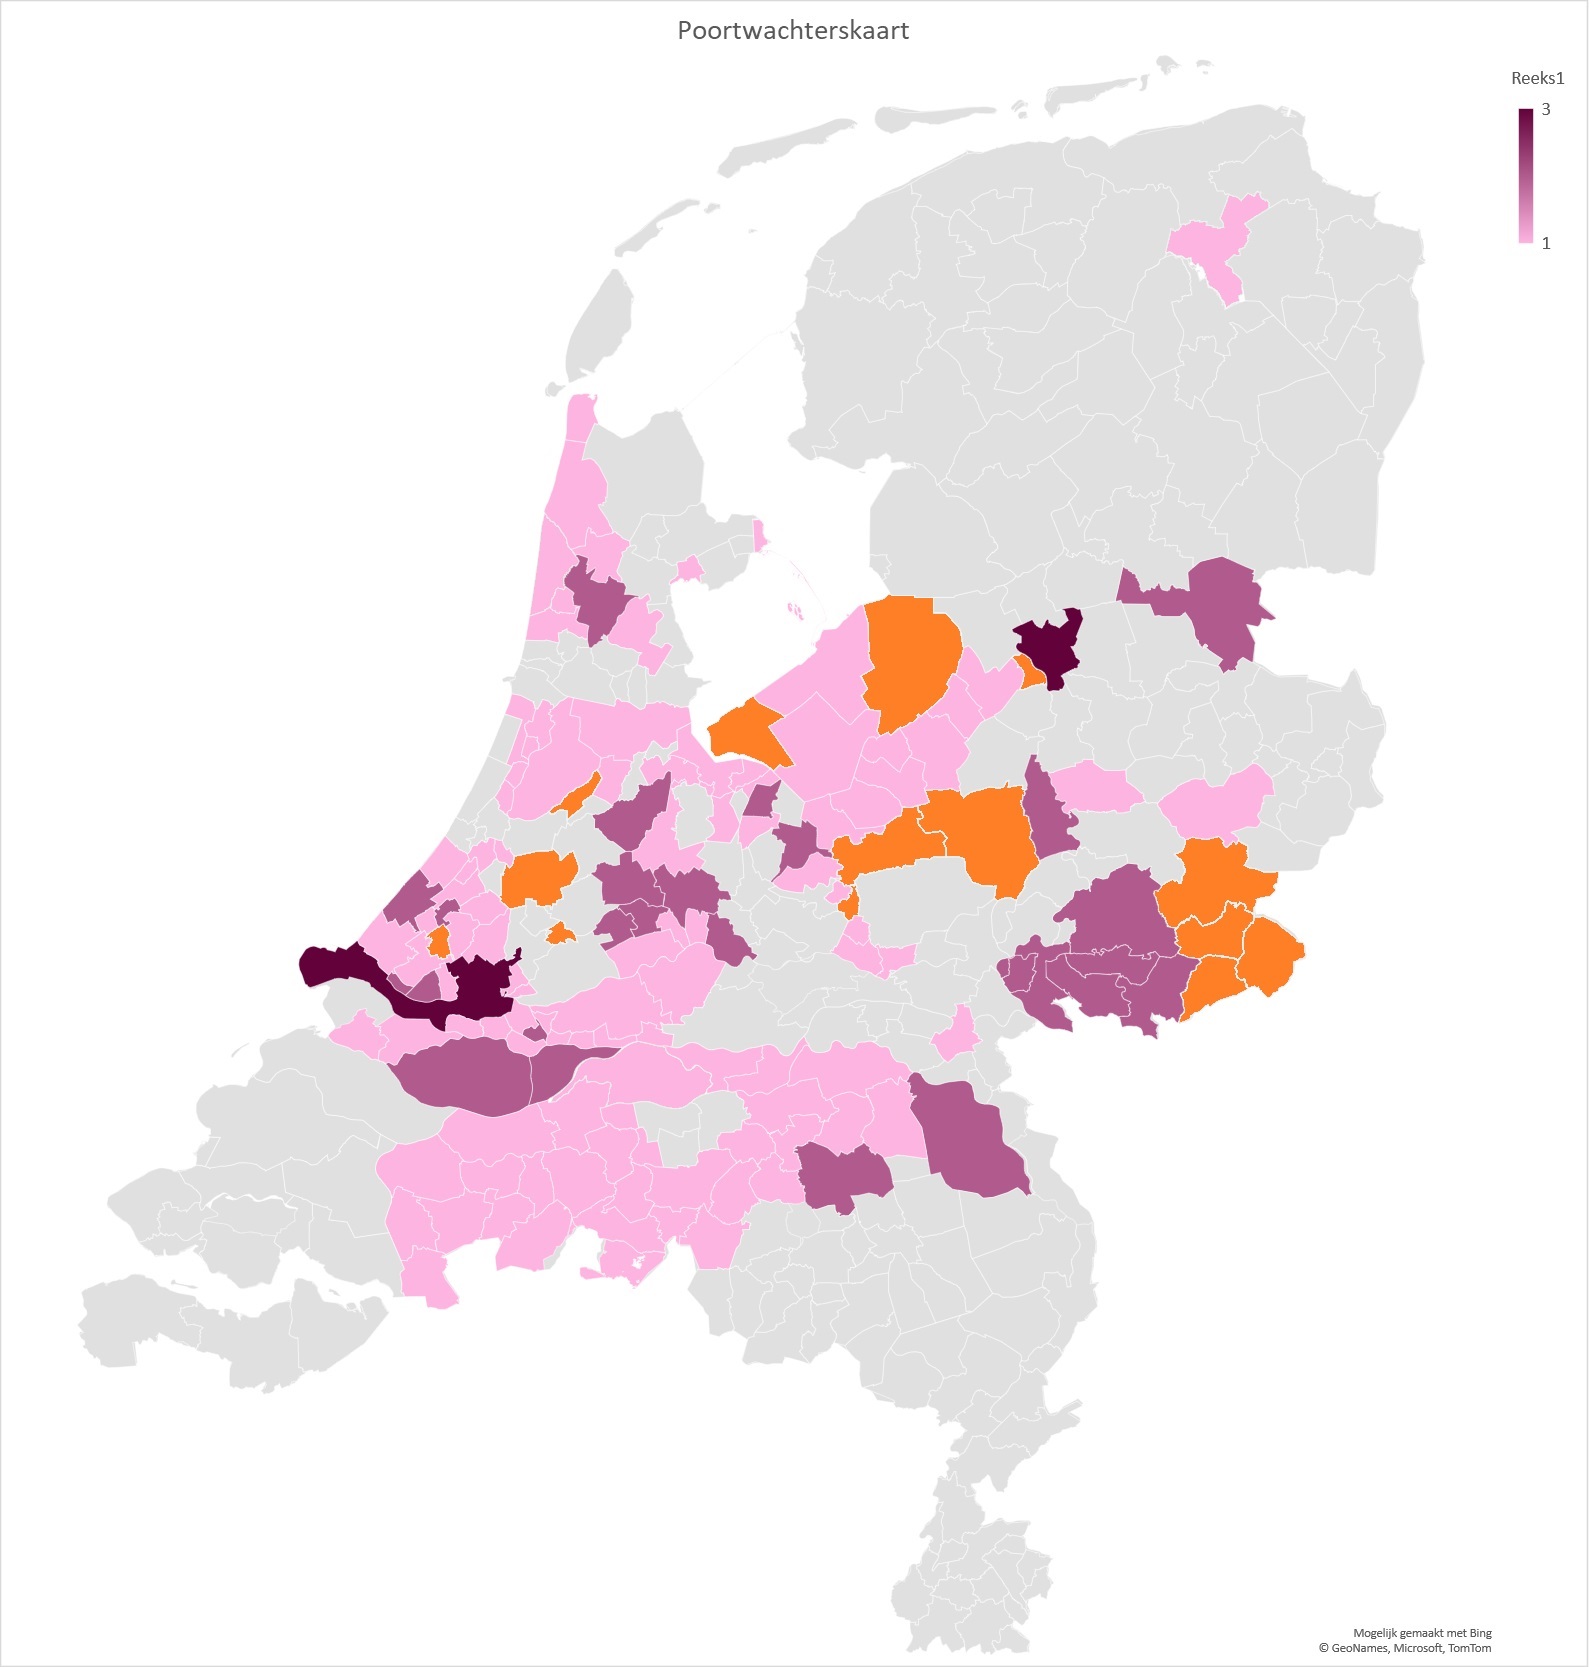 Afbeelding van de kaart van Nederland die laat zien waar poortwachters werkzaam zijn